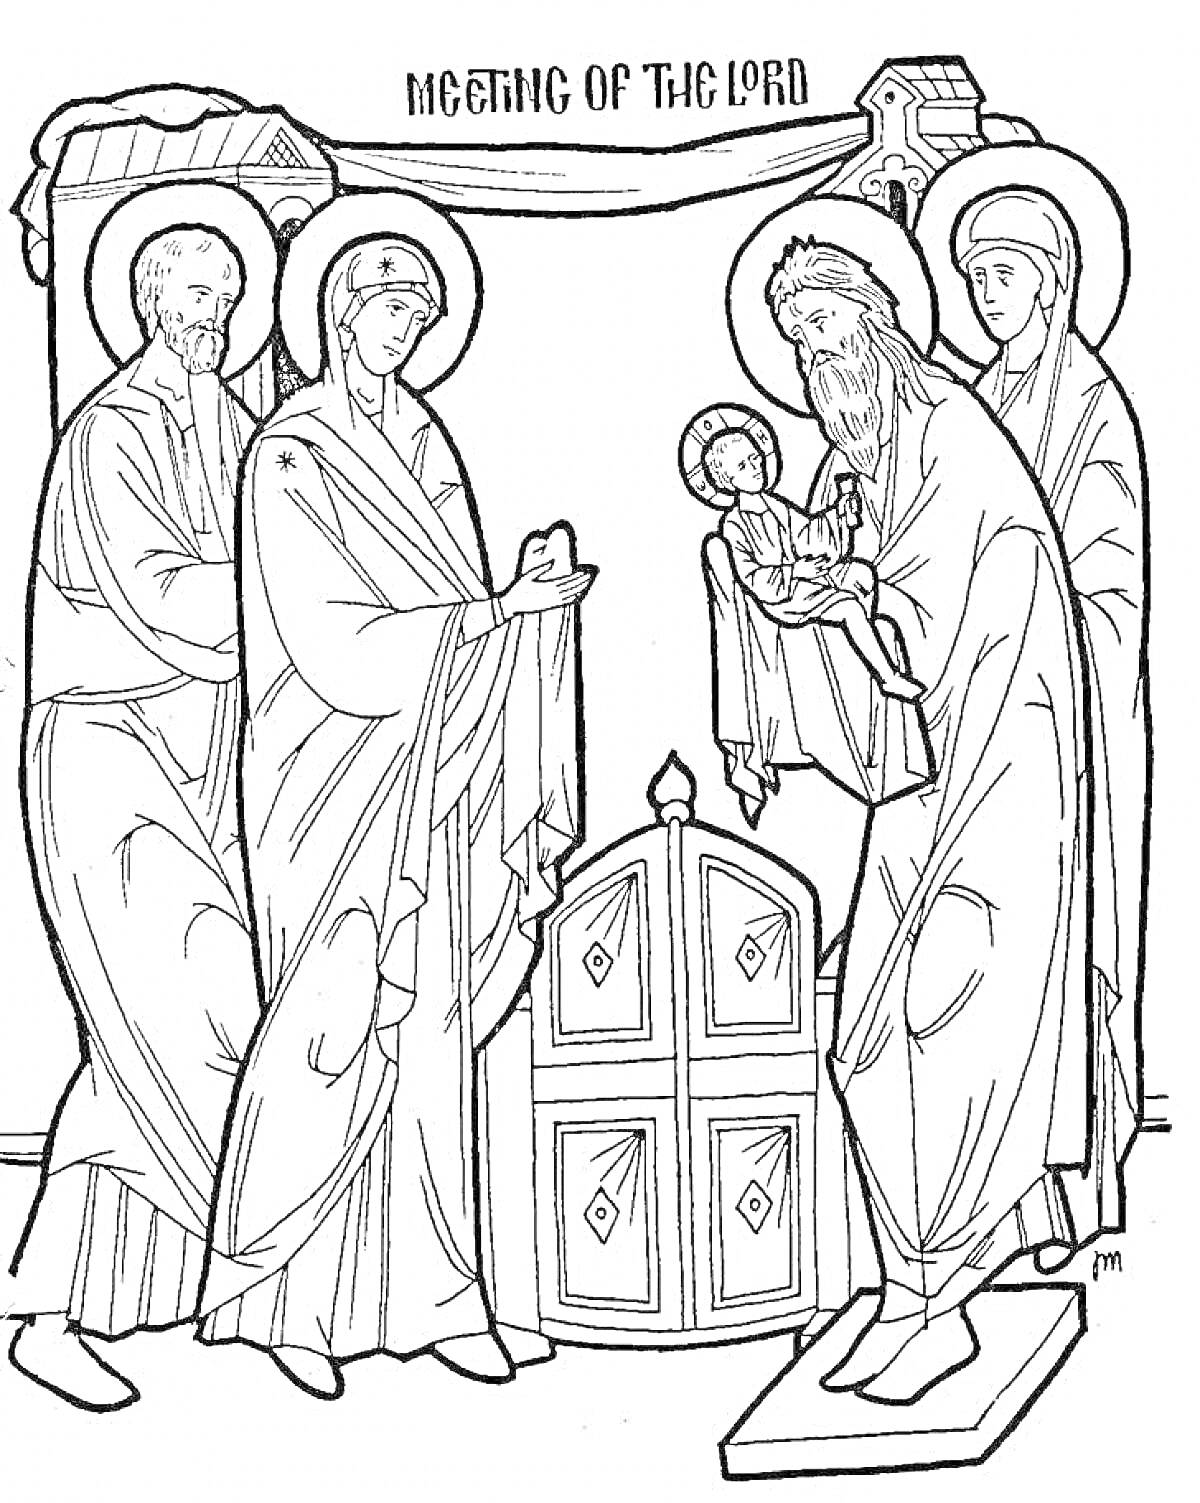 Сретение Господне: встреча младенца Христа с Симеоном на пороге храма, сопровождающие фигуры